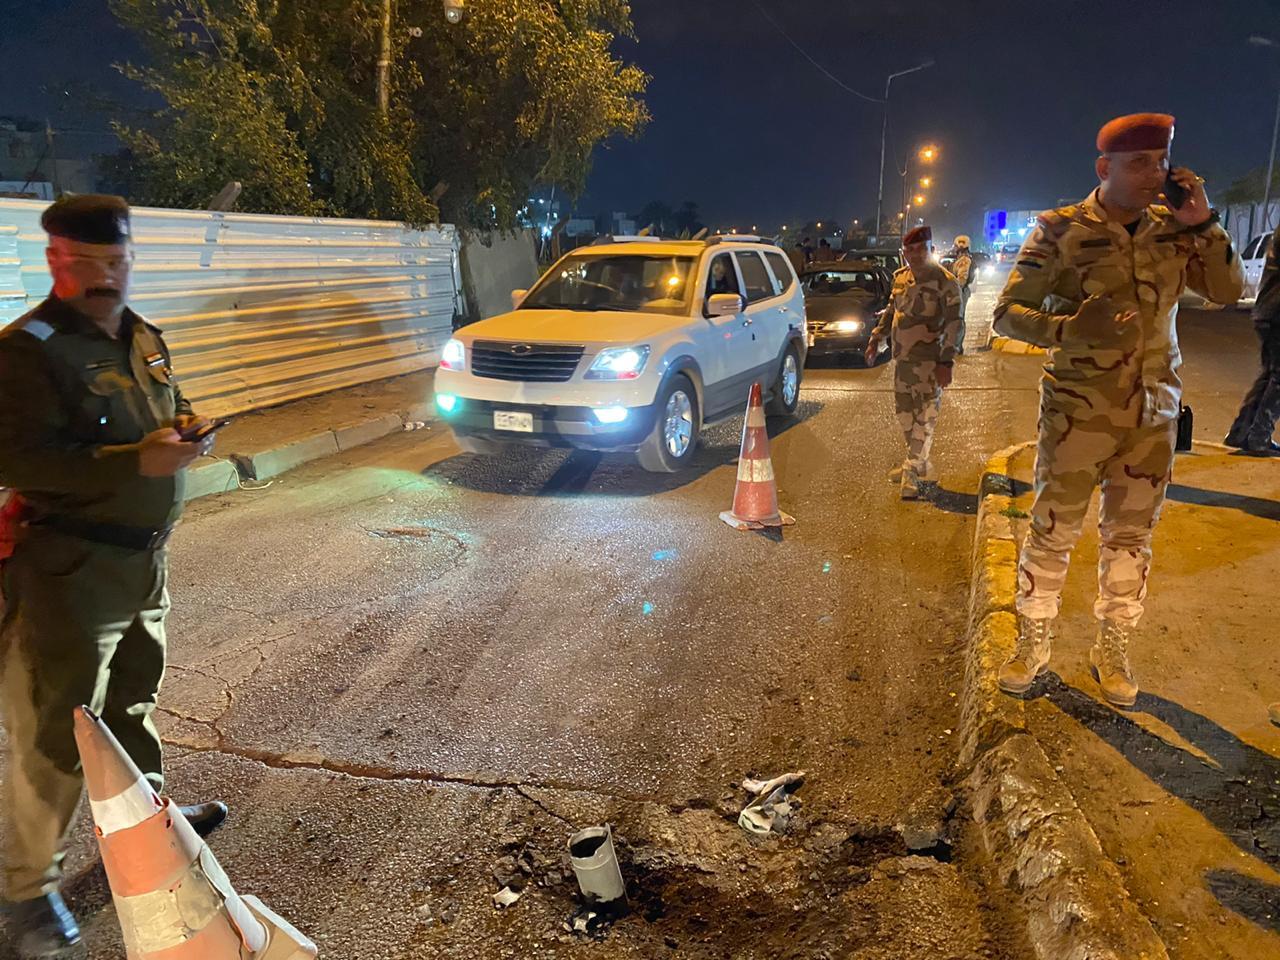 سقوط صاروخين في بغداد أحدهما على المنطقة الخضراء (صور)